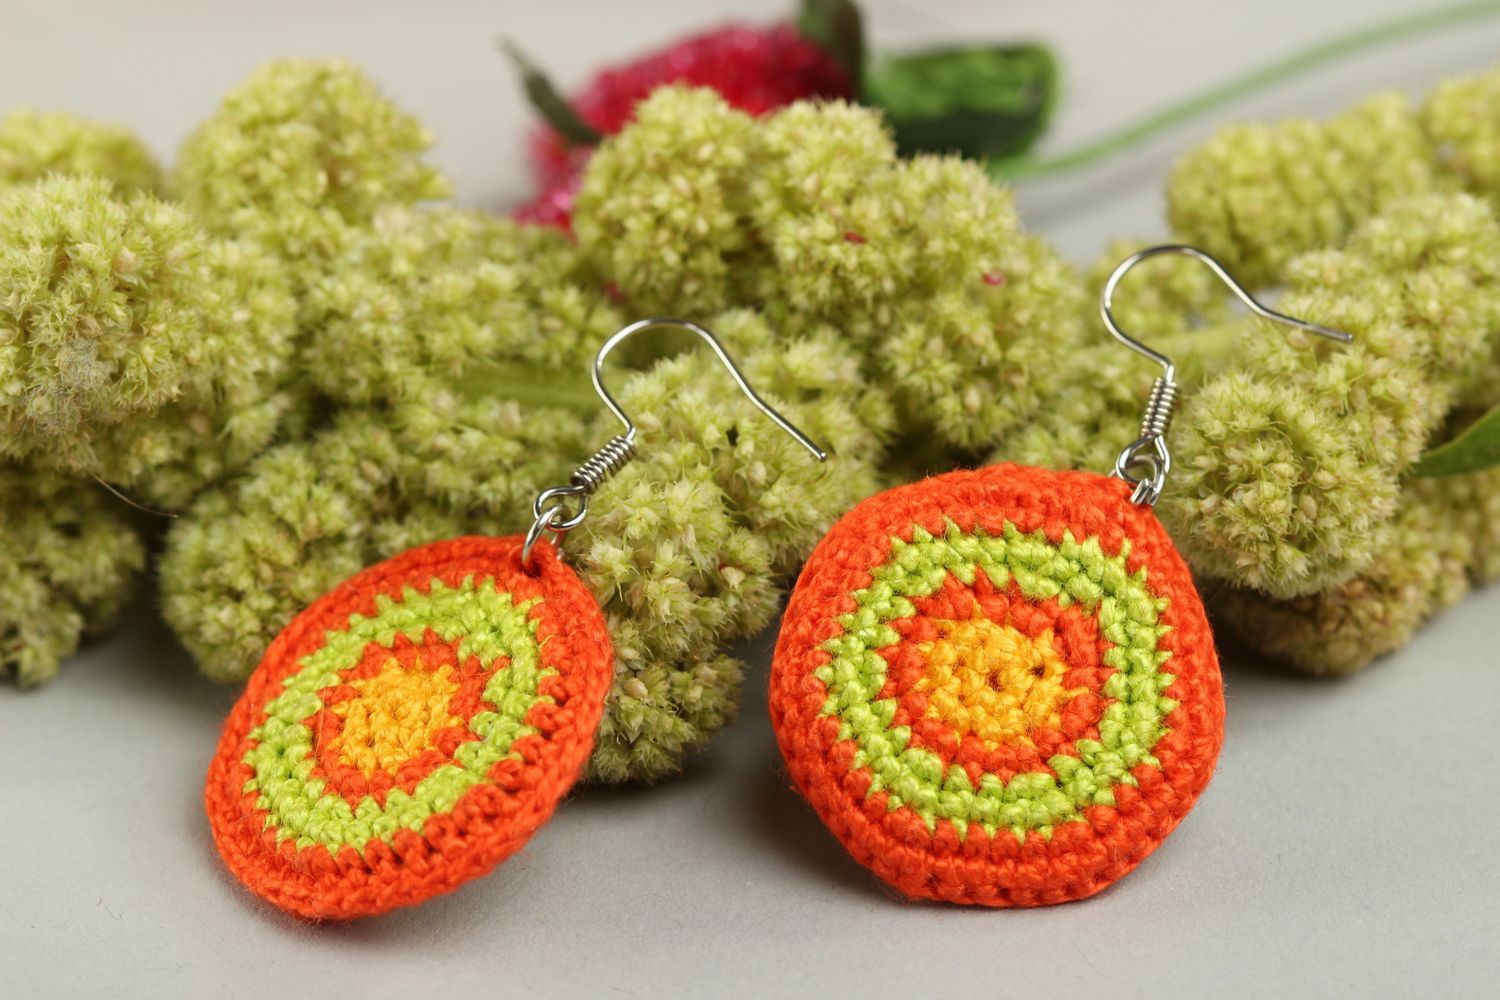 Handmade earrings designer earrings unusual accessory gift ideas crochet jewelry photo 1